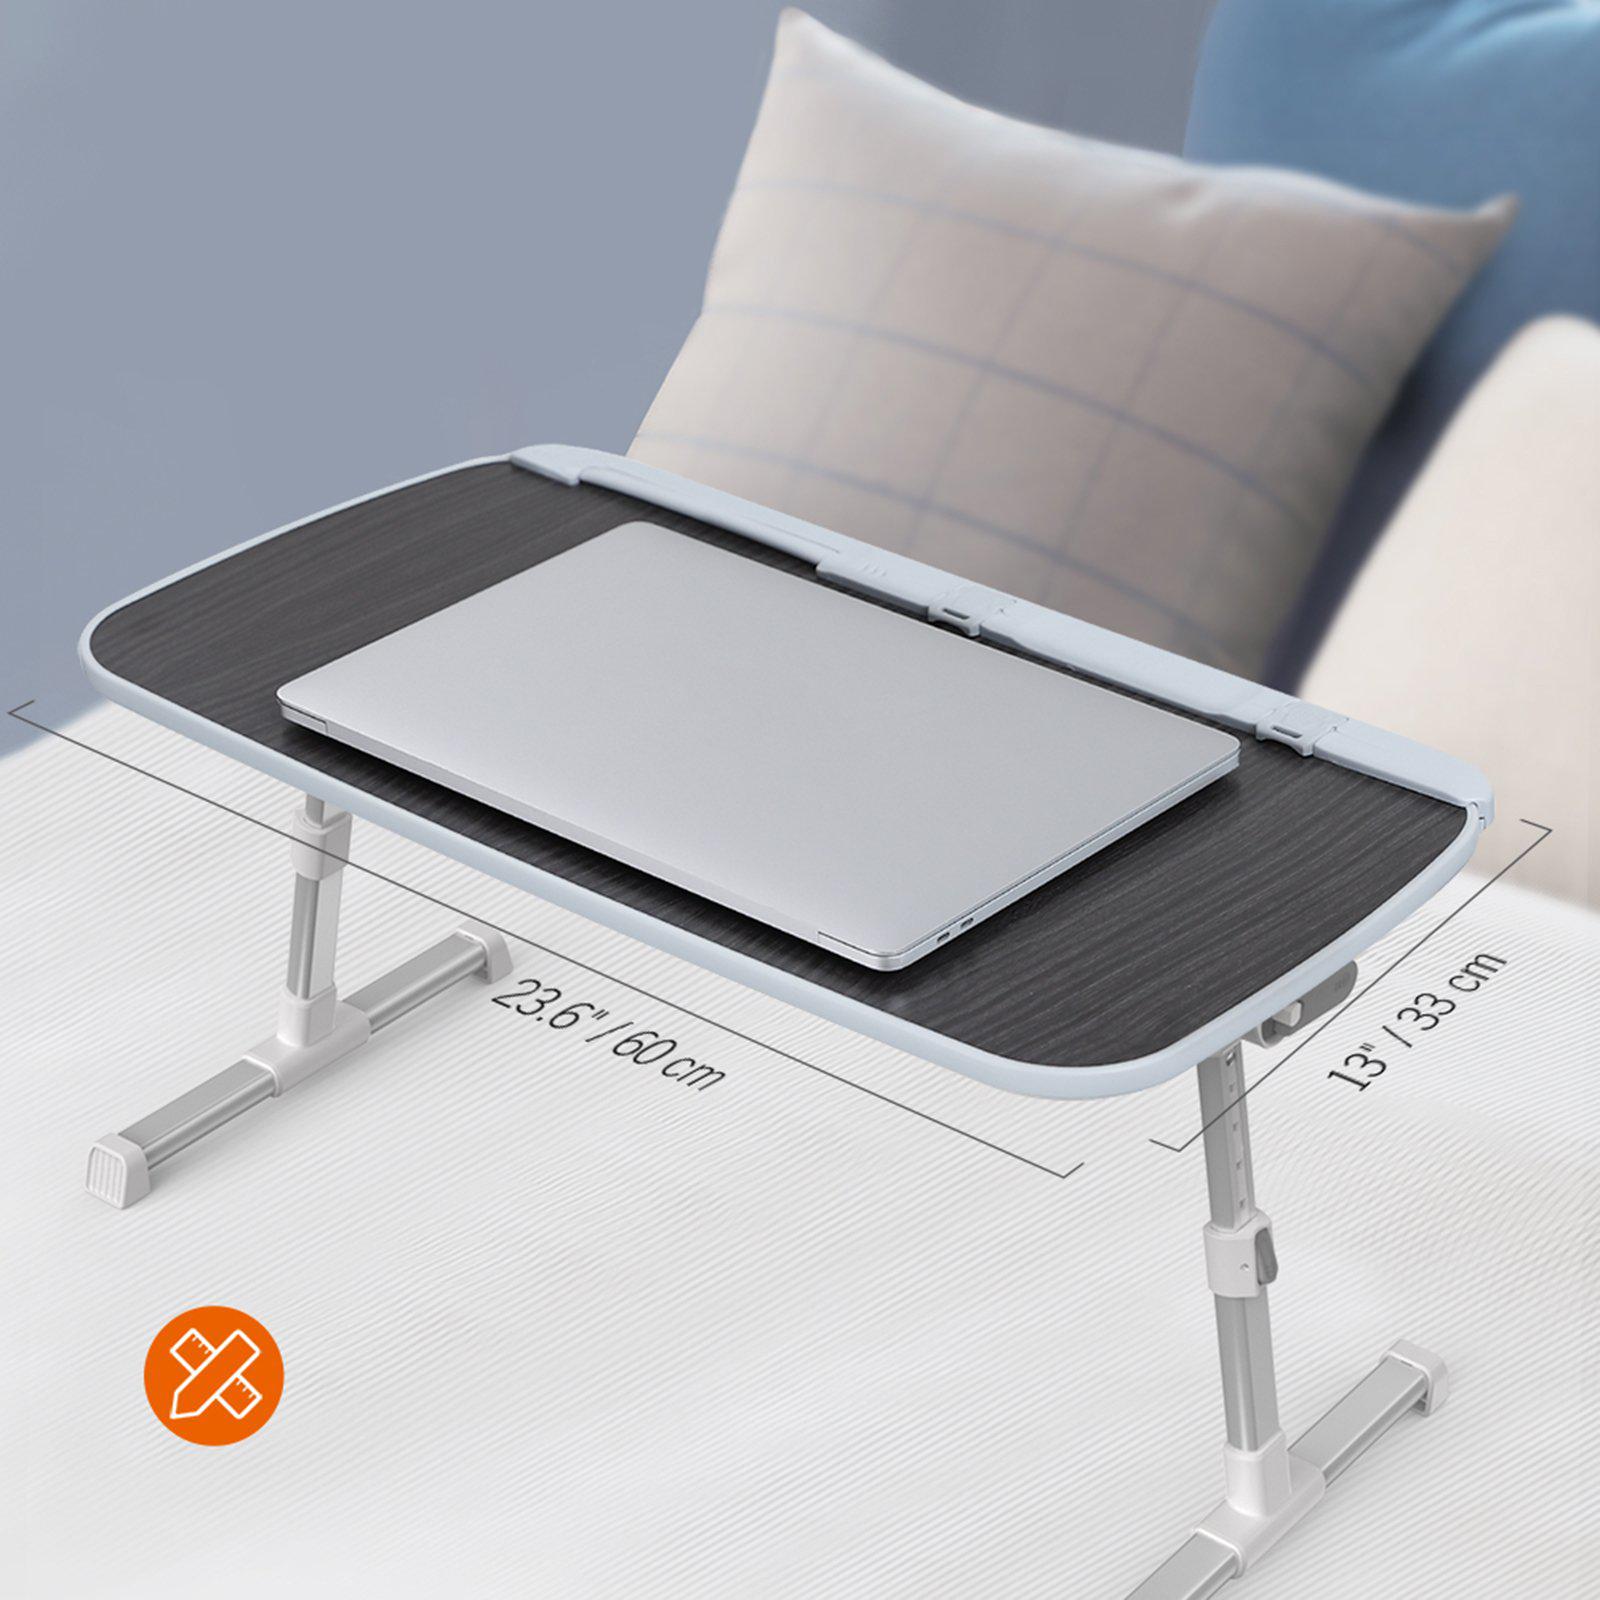 Laptop Desk for Bed 03-TaoTronics